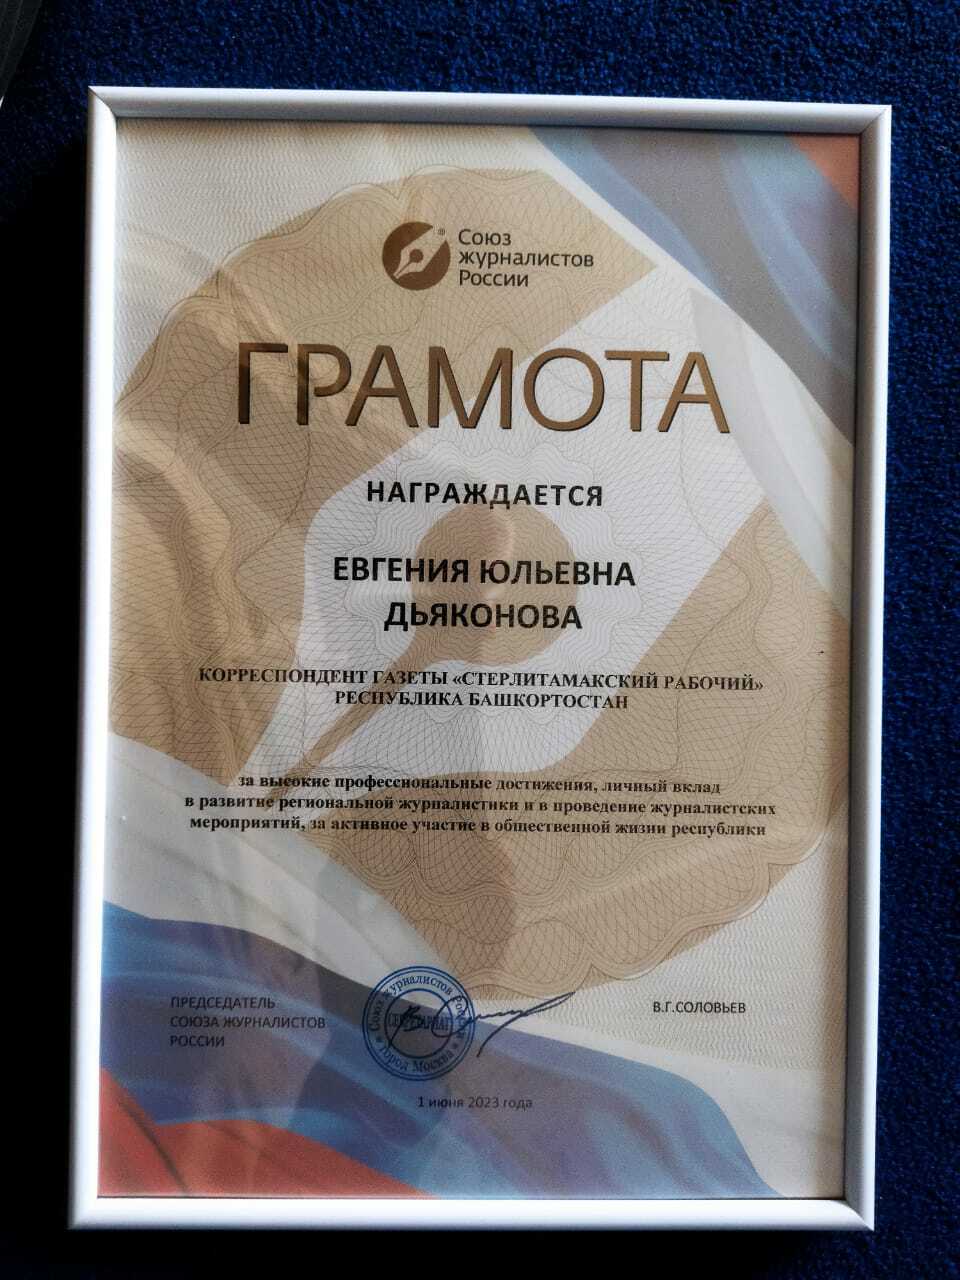 Журналистам из Стерлитамака на III медиафоруме СМИ  республики «Медиайыйын-2023» вручили заслуженные награды